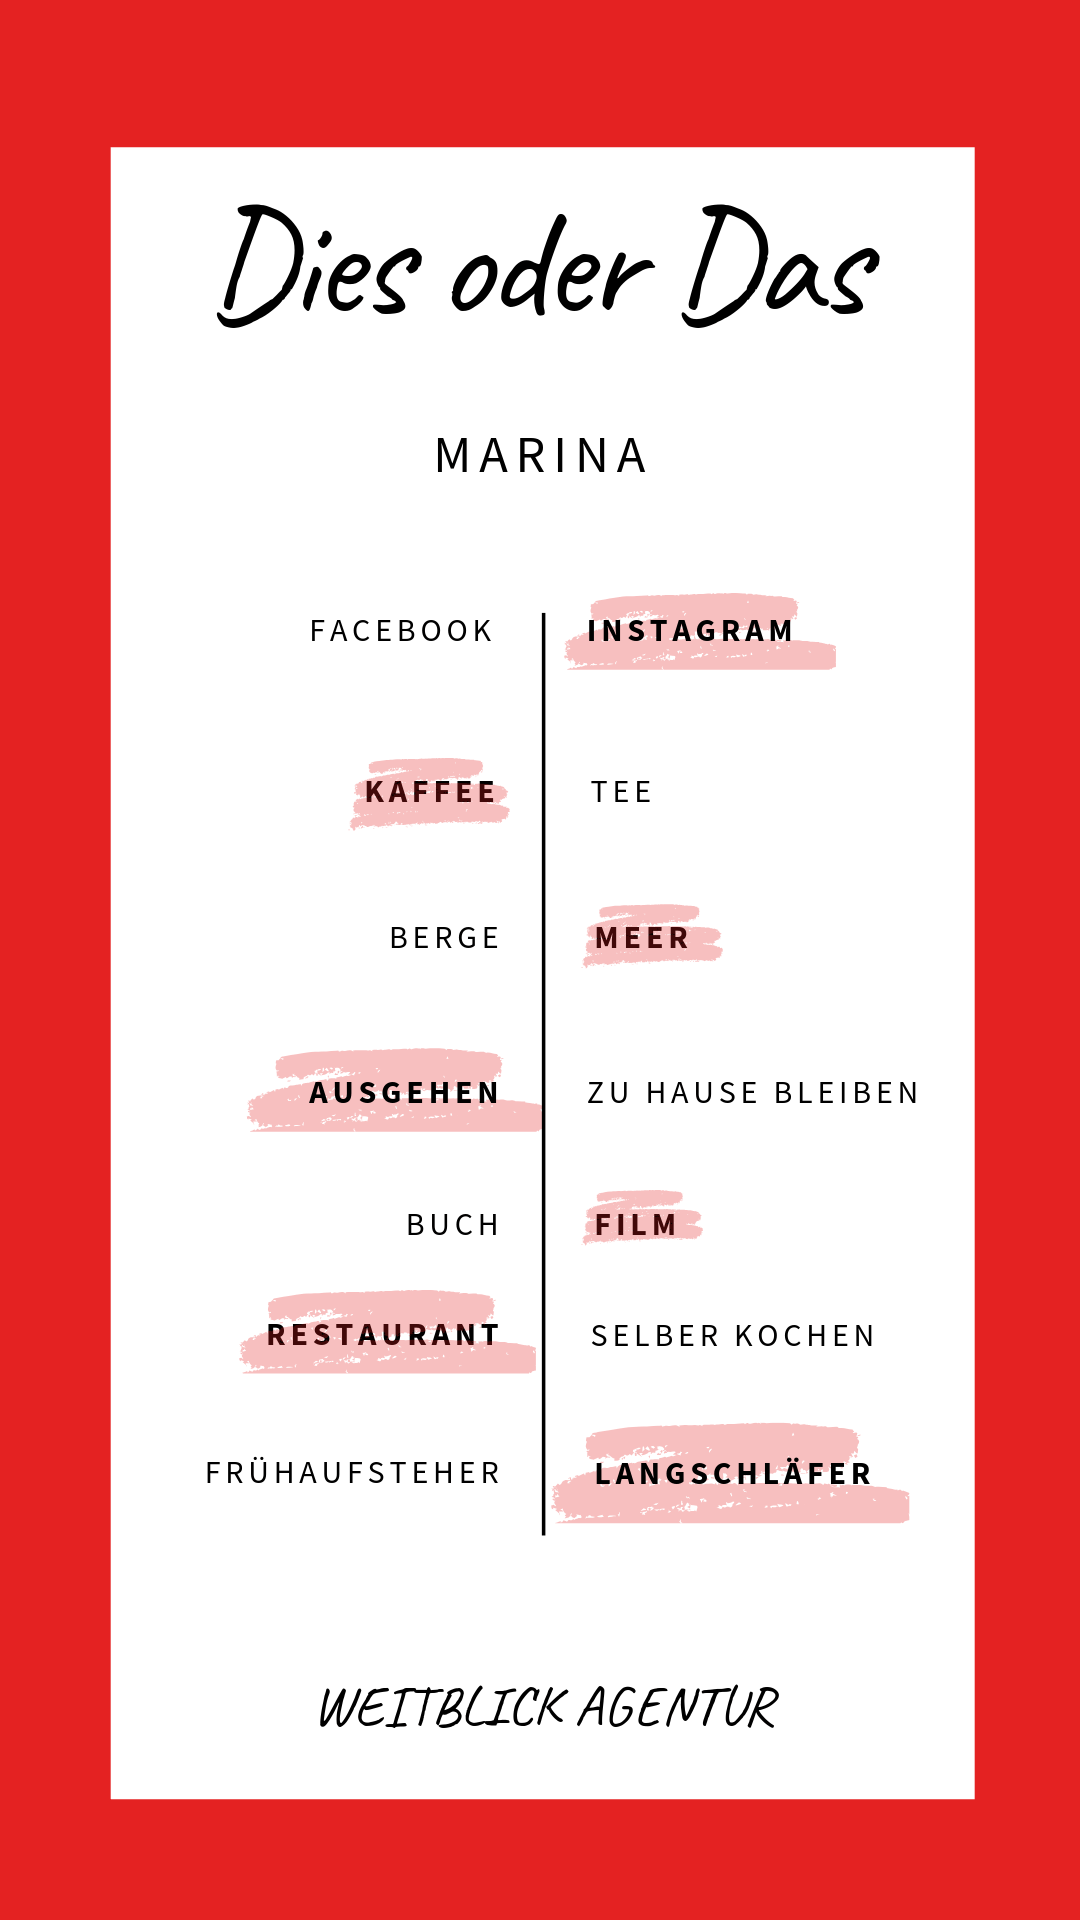 Dies oder das Marina